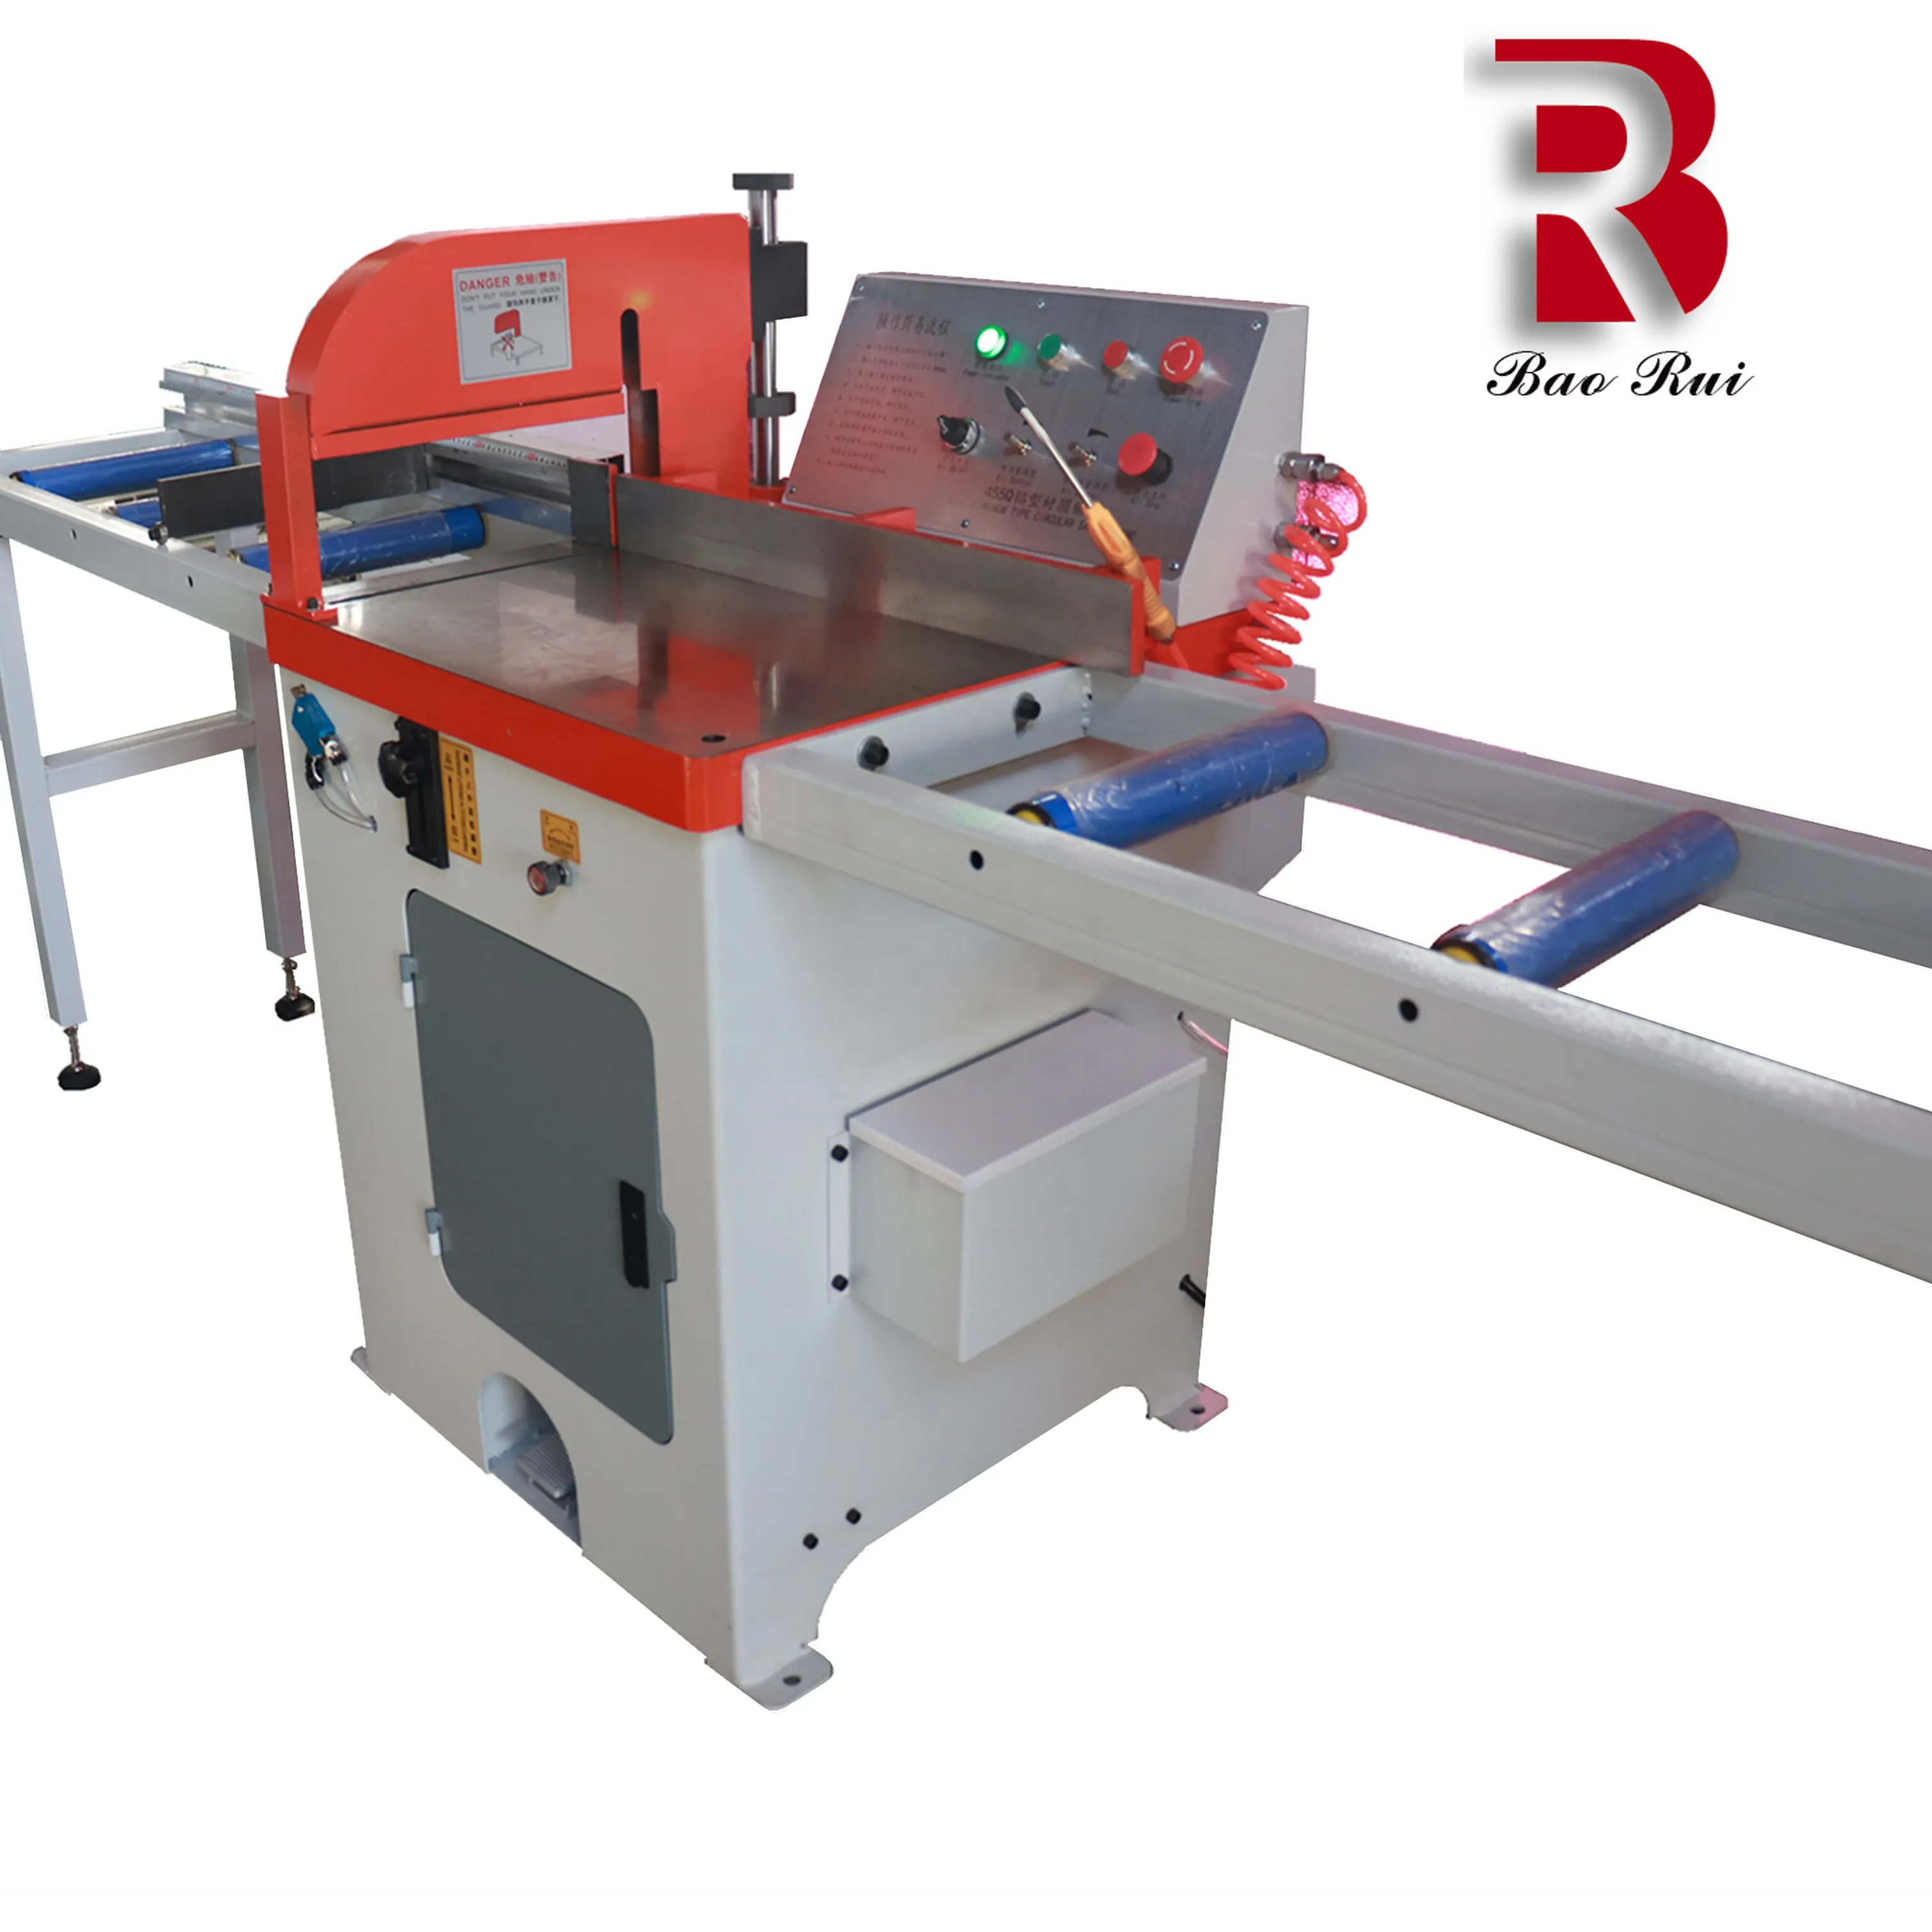 High Level Semi-automatic Aluminum cutting machine with Clean Cut